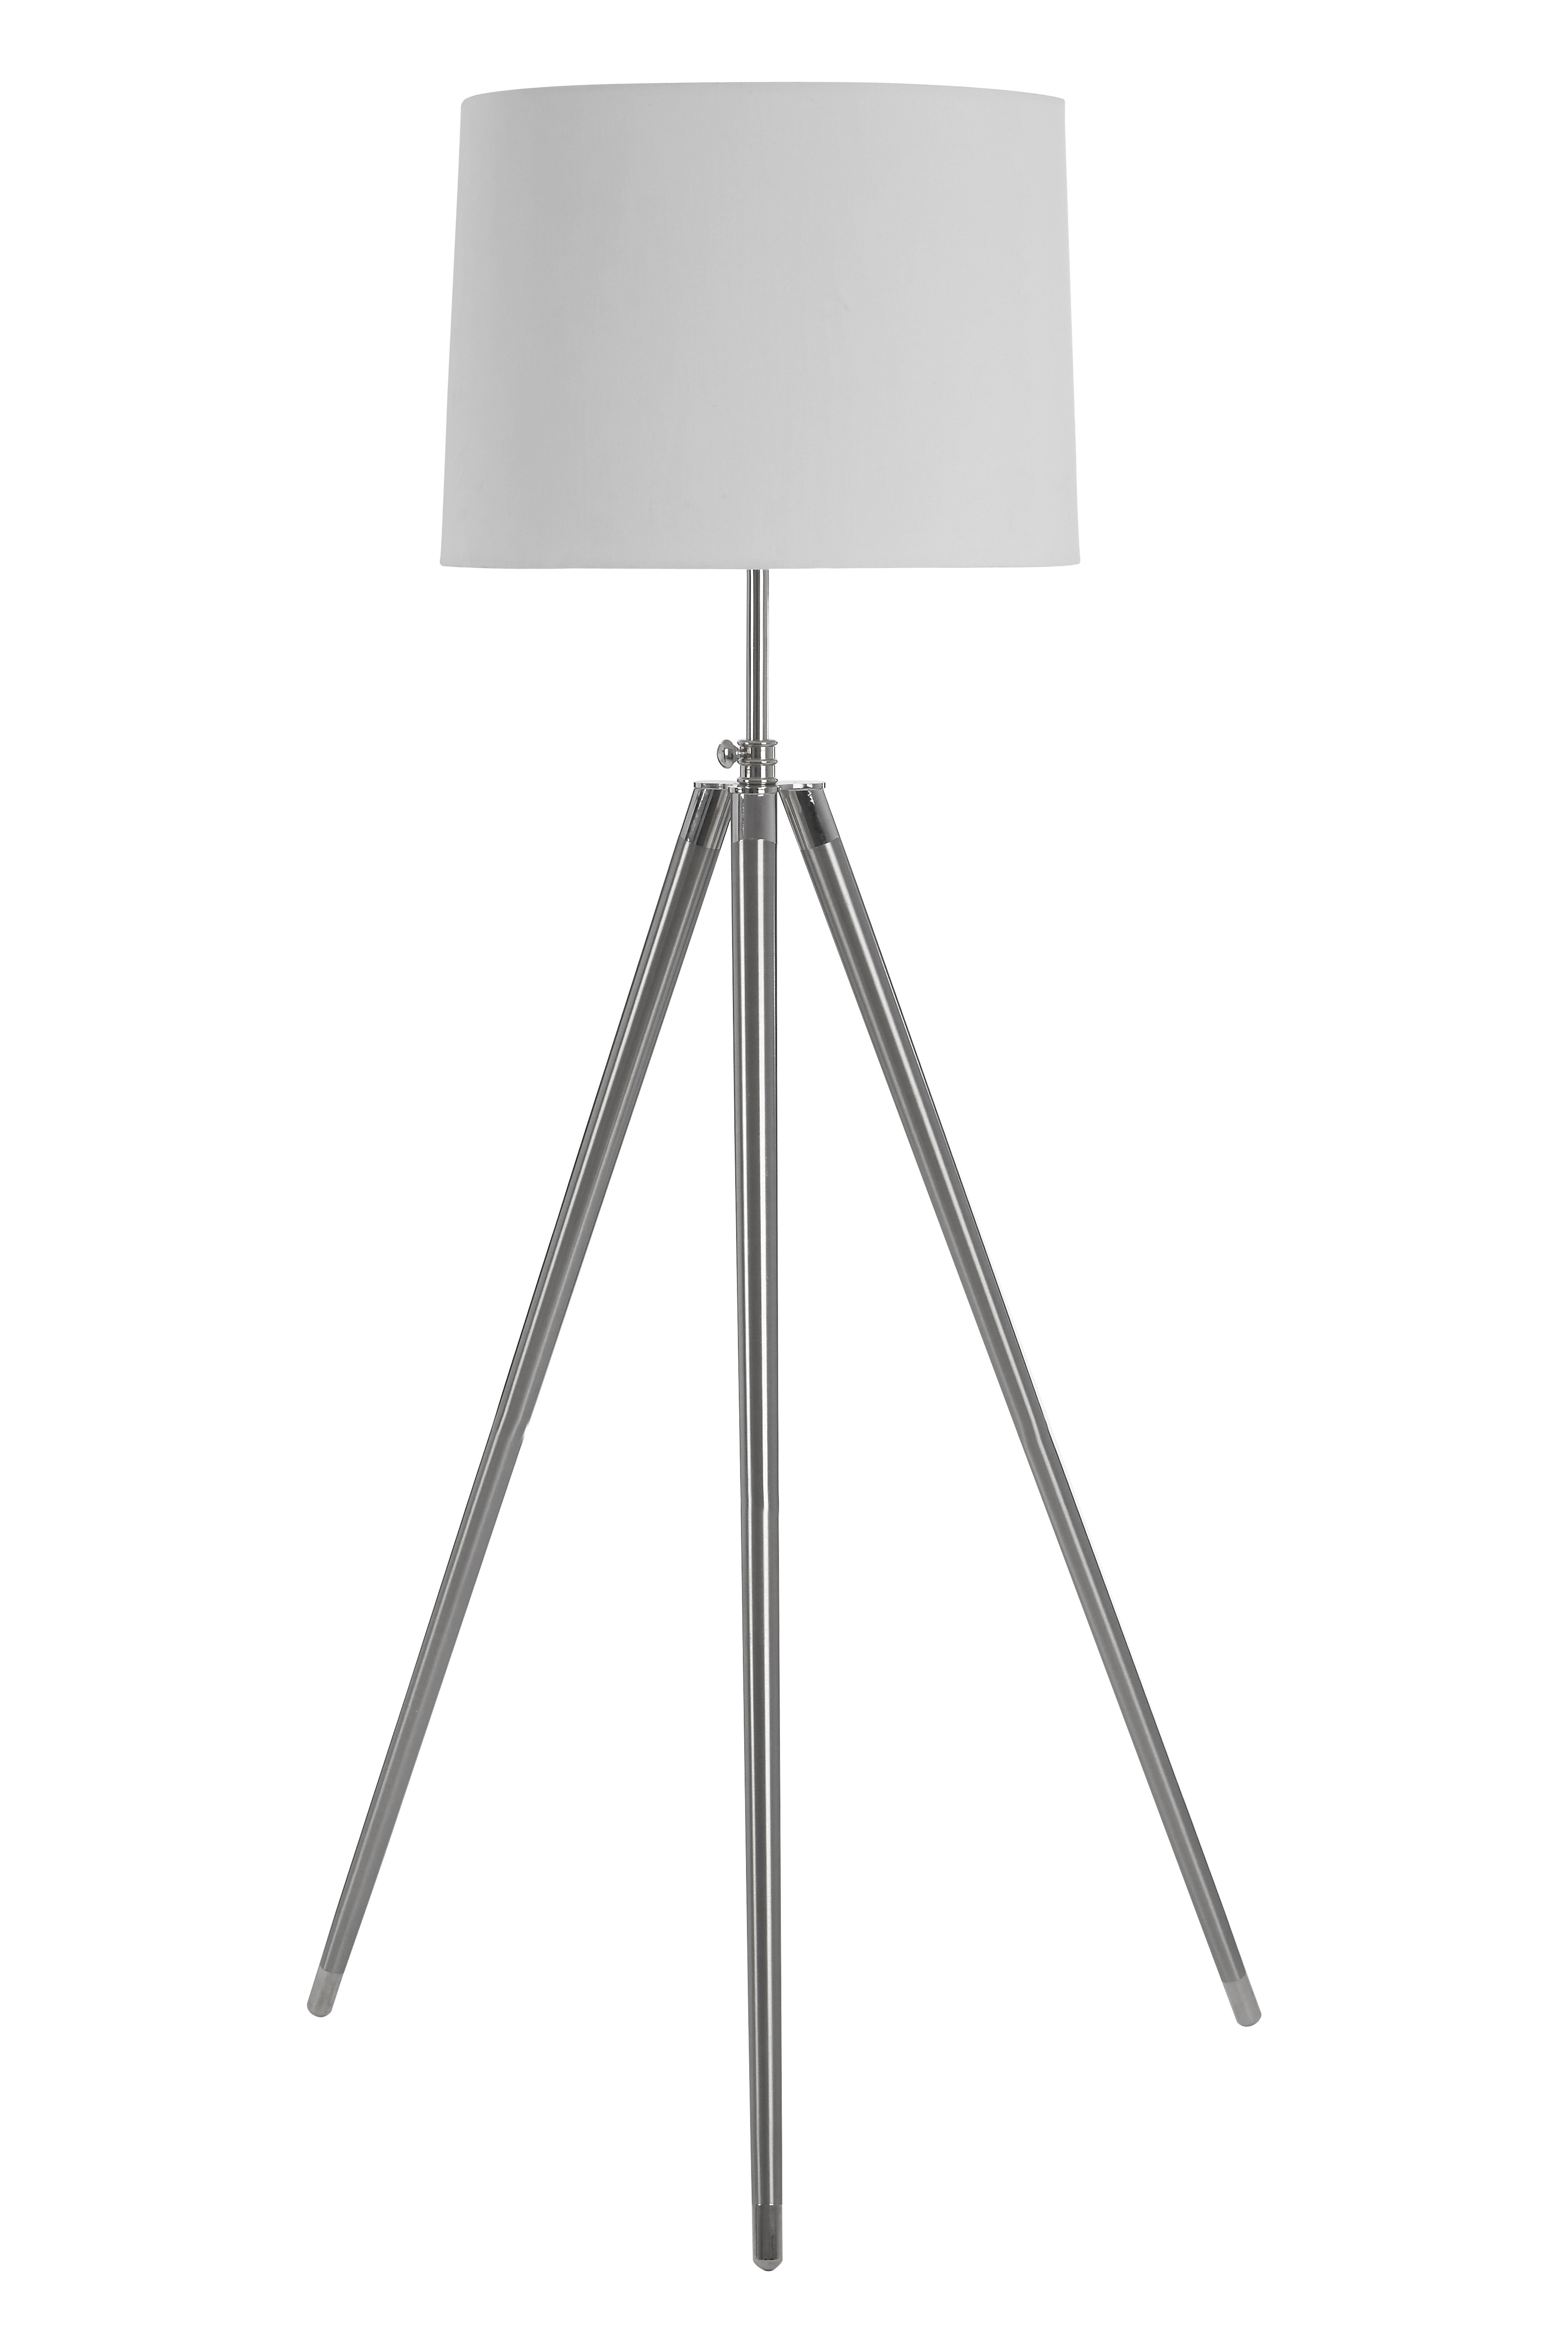 Unique Floor Lamp With Uk Plug regarding dimensions 3600 X 5400